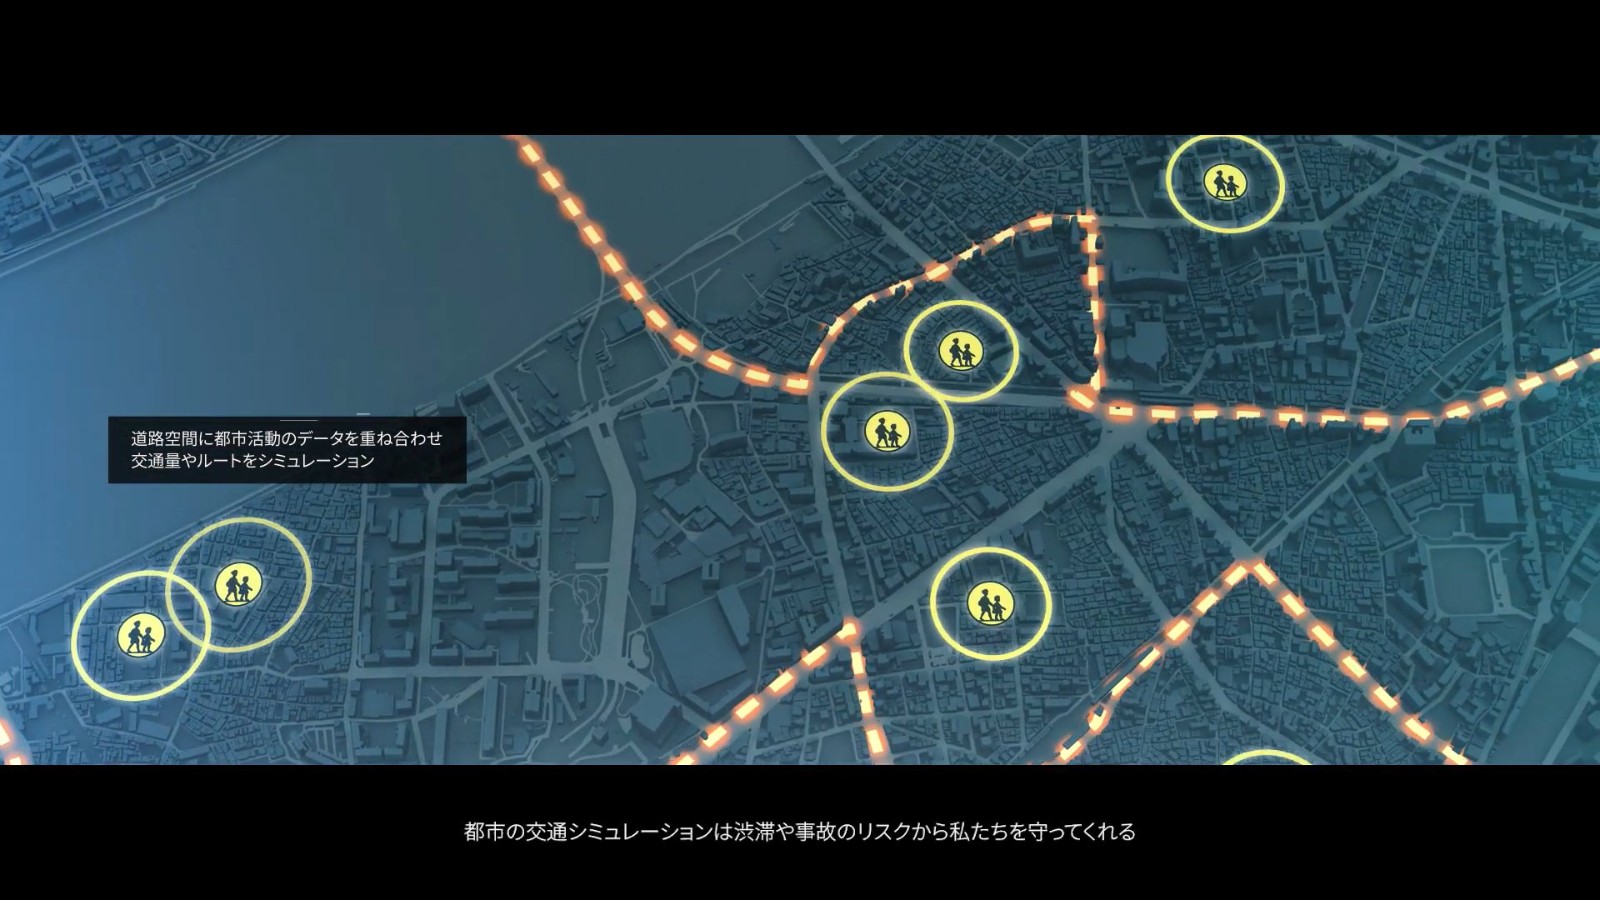 日本国交省免费公开东京23区3D模型数据 用于制作3D类游戏